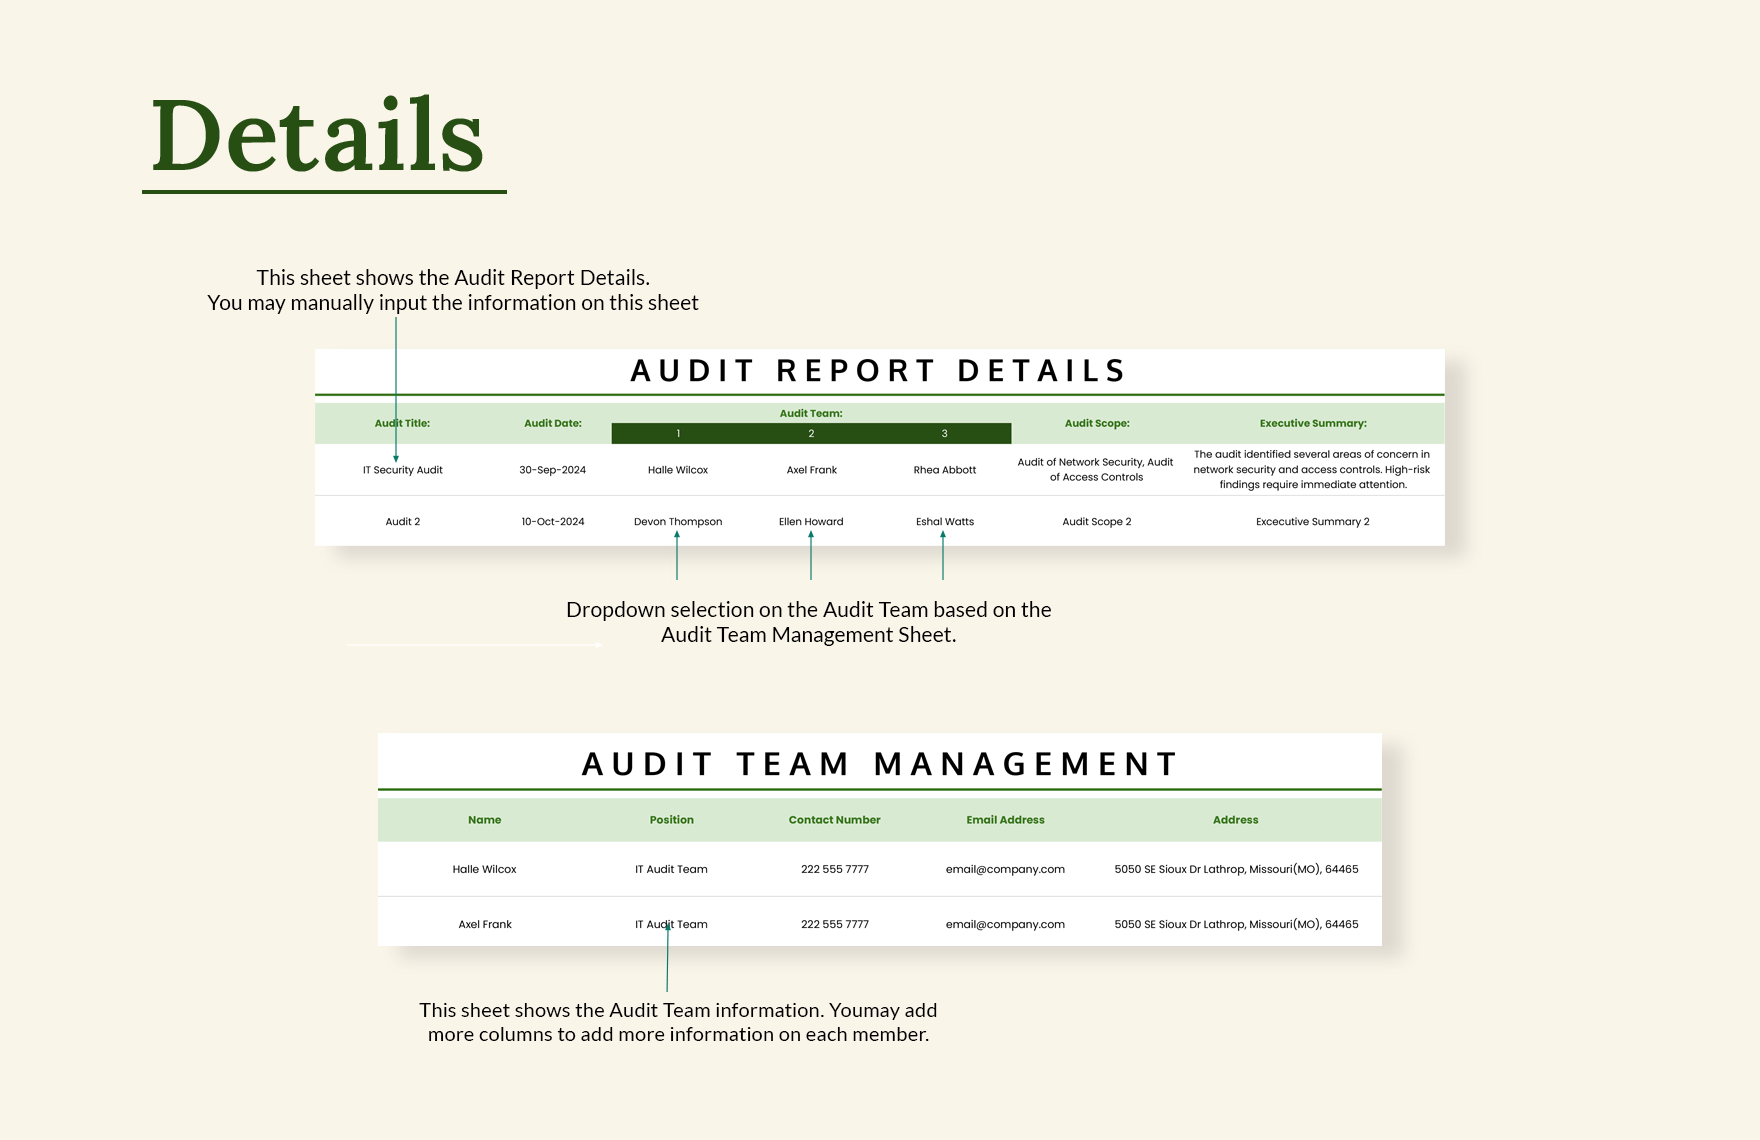 IT Internal Audit Report Sheet Template